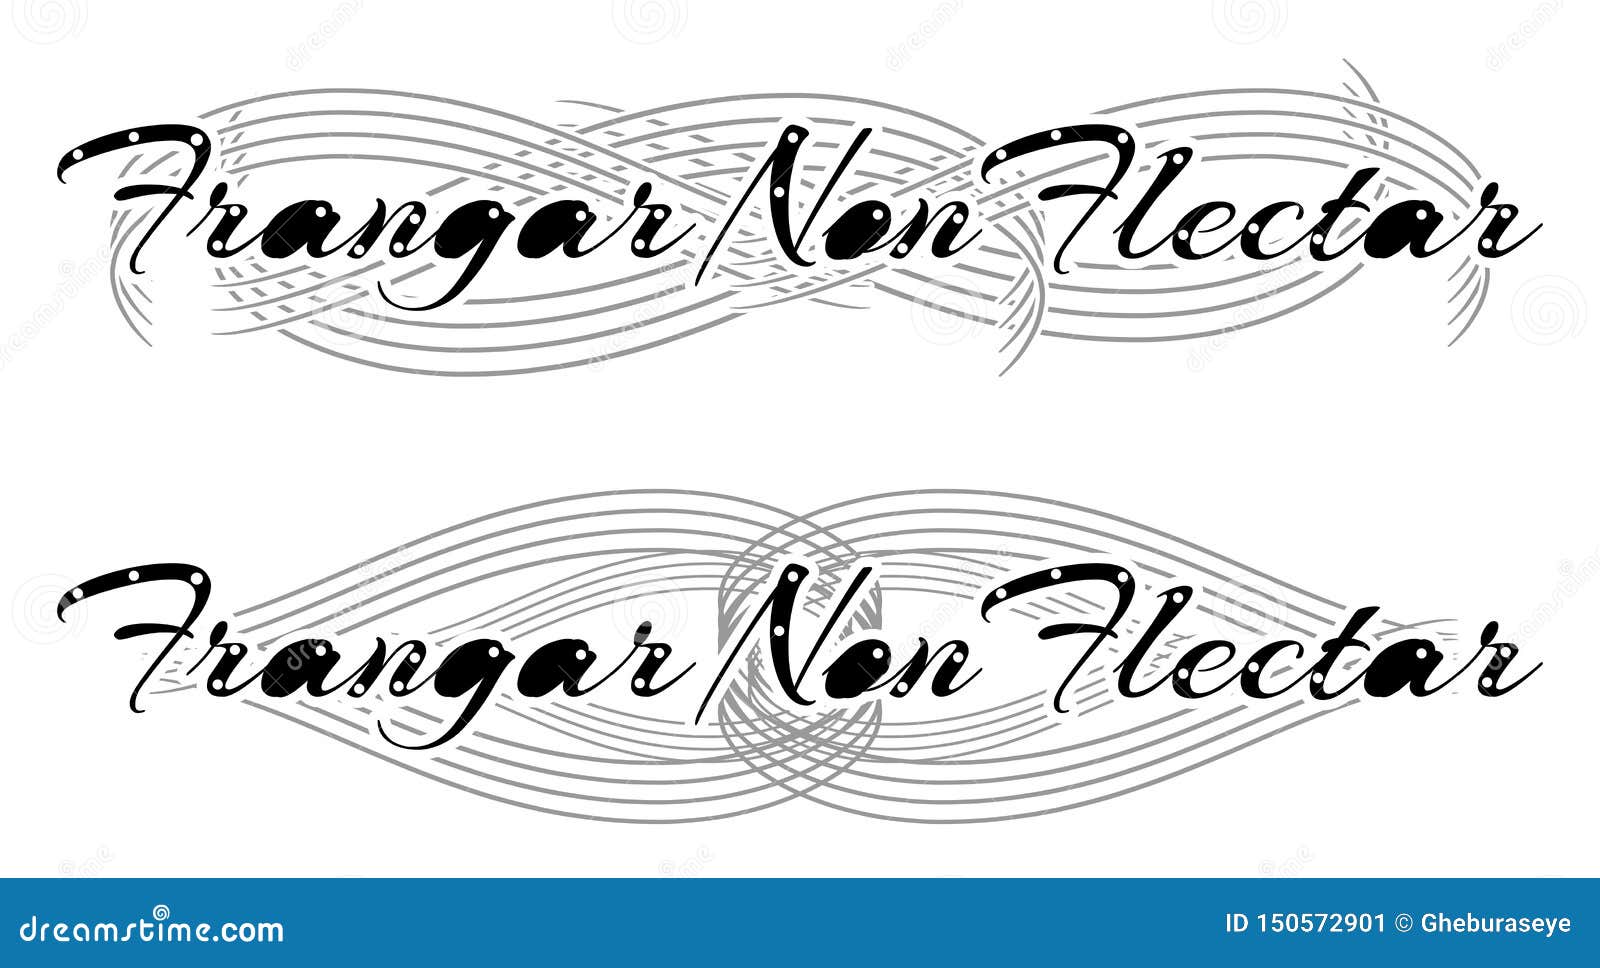 The word is a latin word. Flectar non Frangar. Word a Gothic Style. Flectar non Frangar logo. Flectar non Frangar logo 1916.